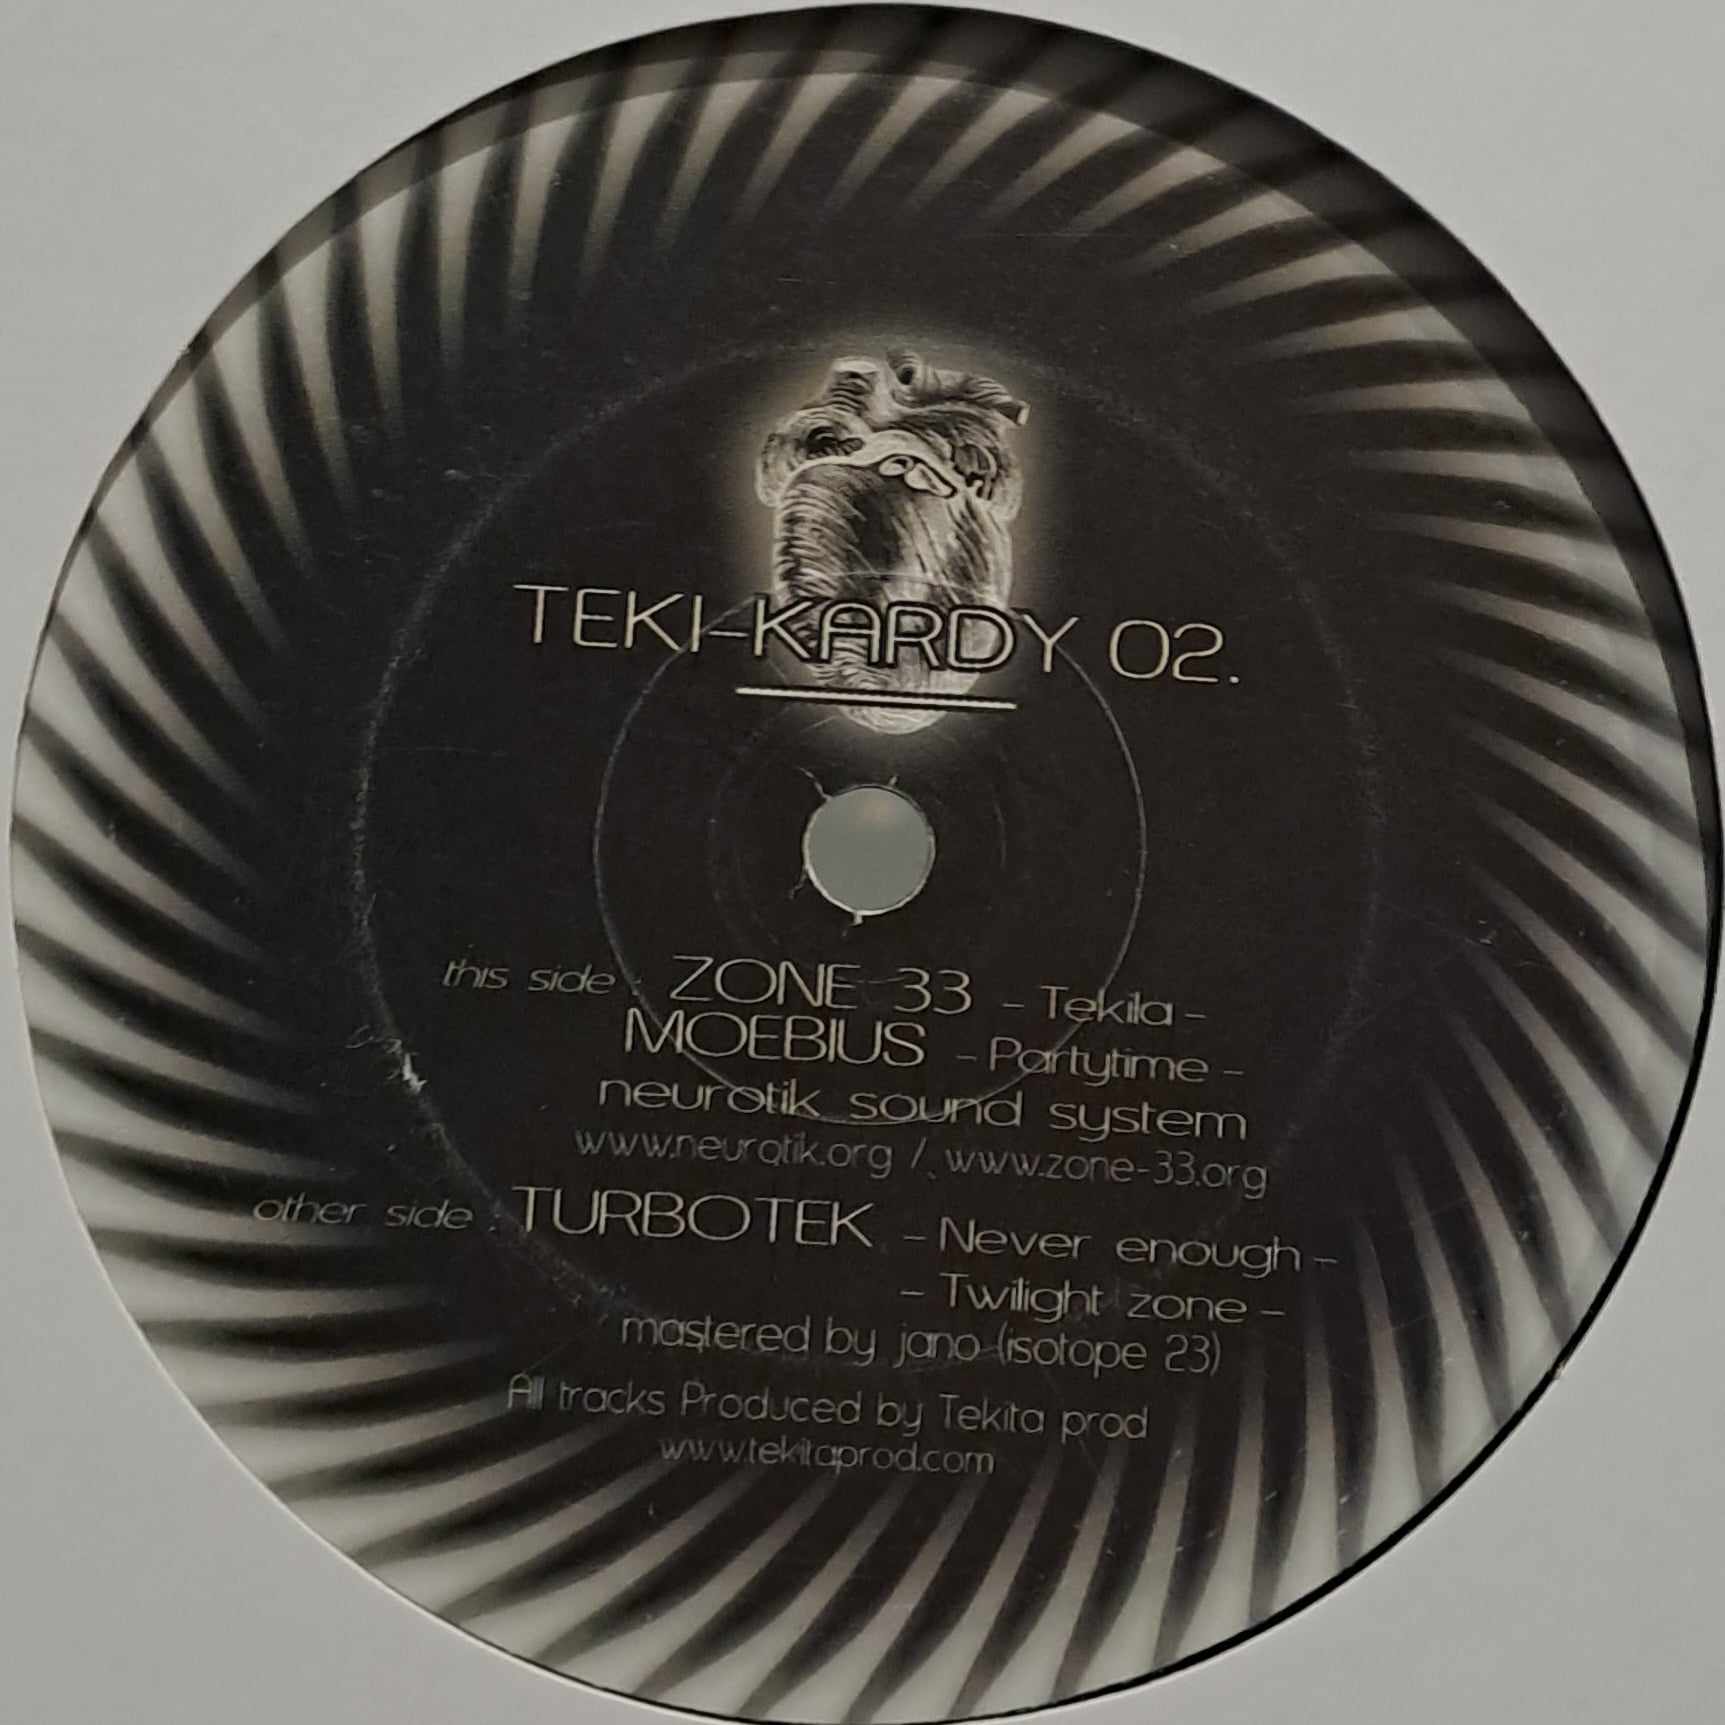 Teki-Kardy 02 - vinyle freetekno